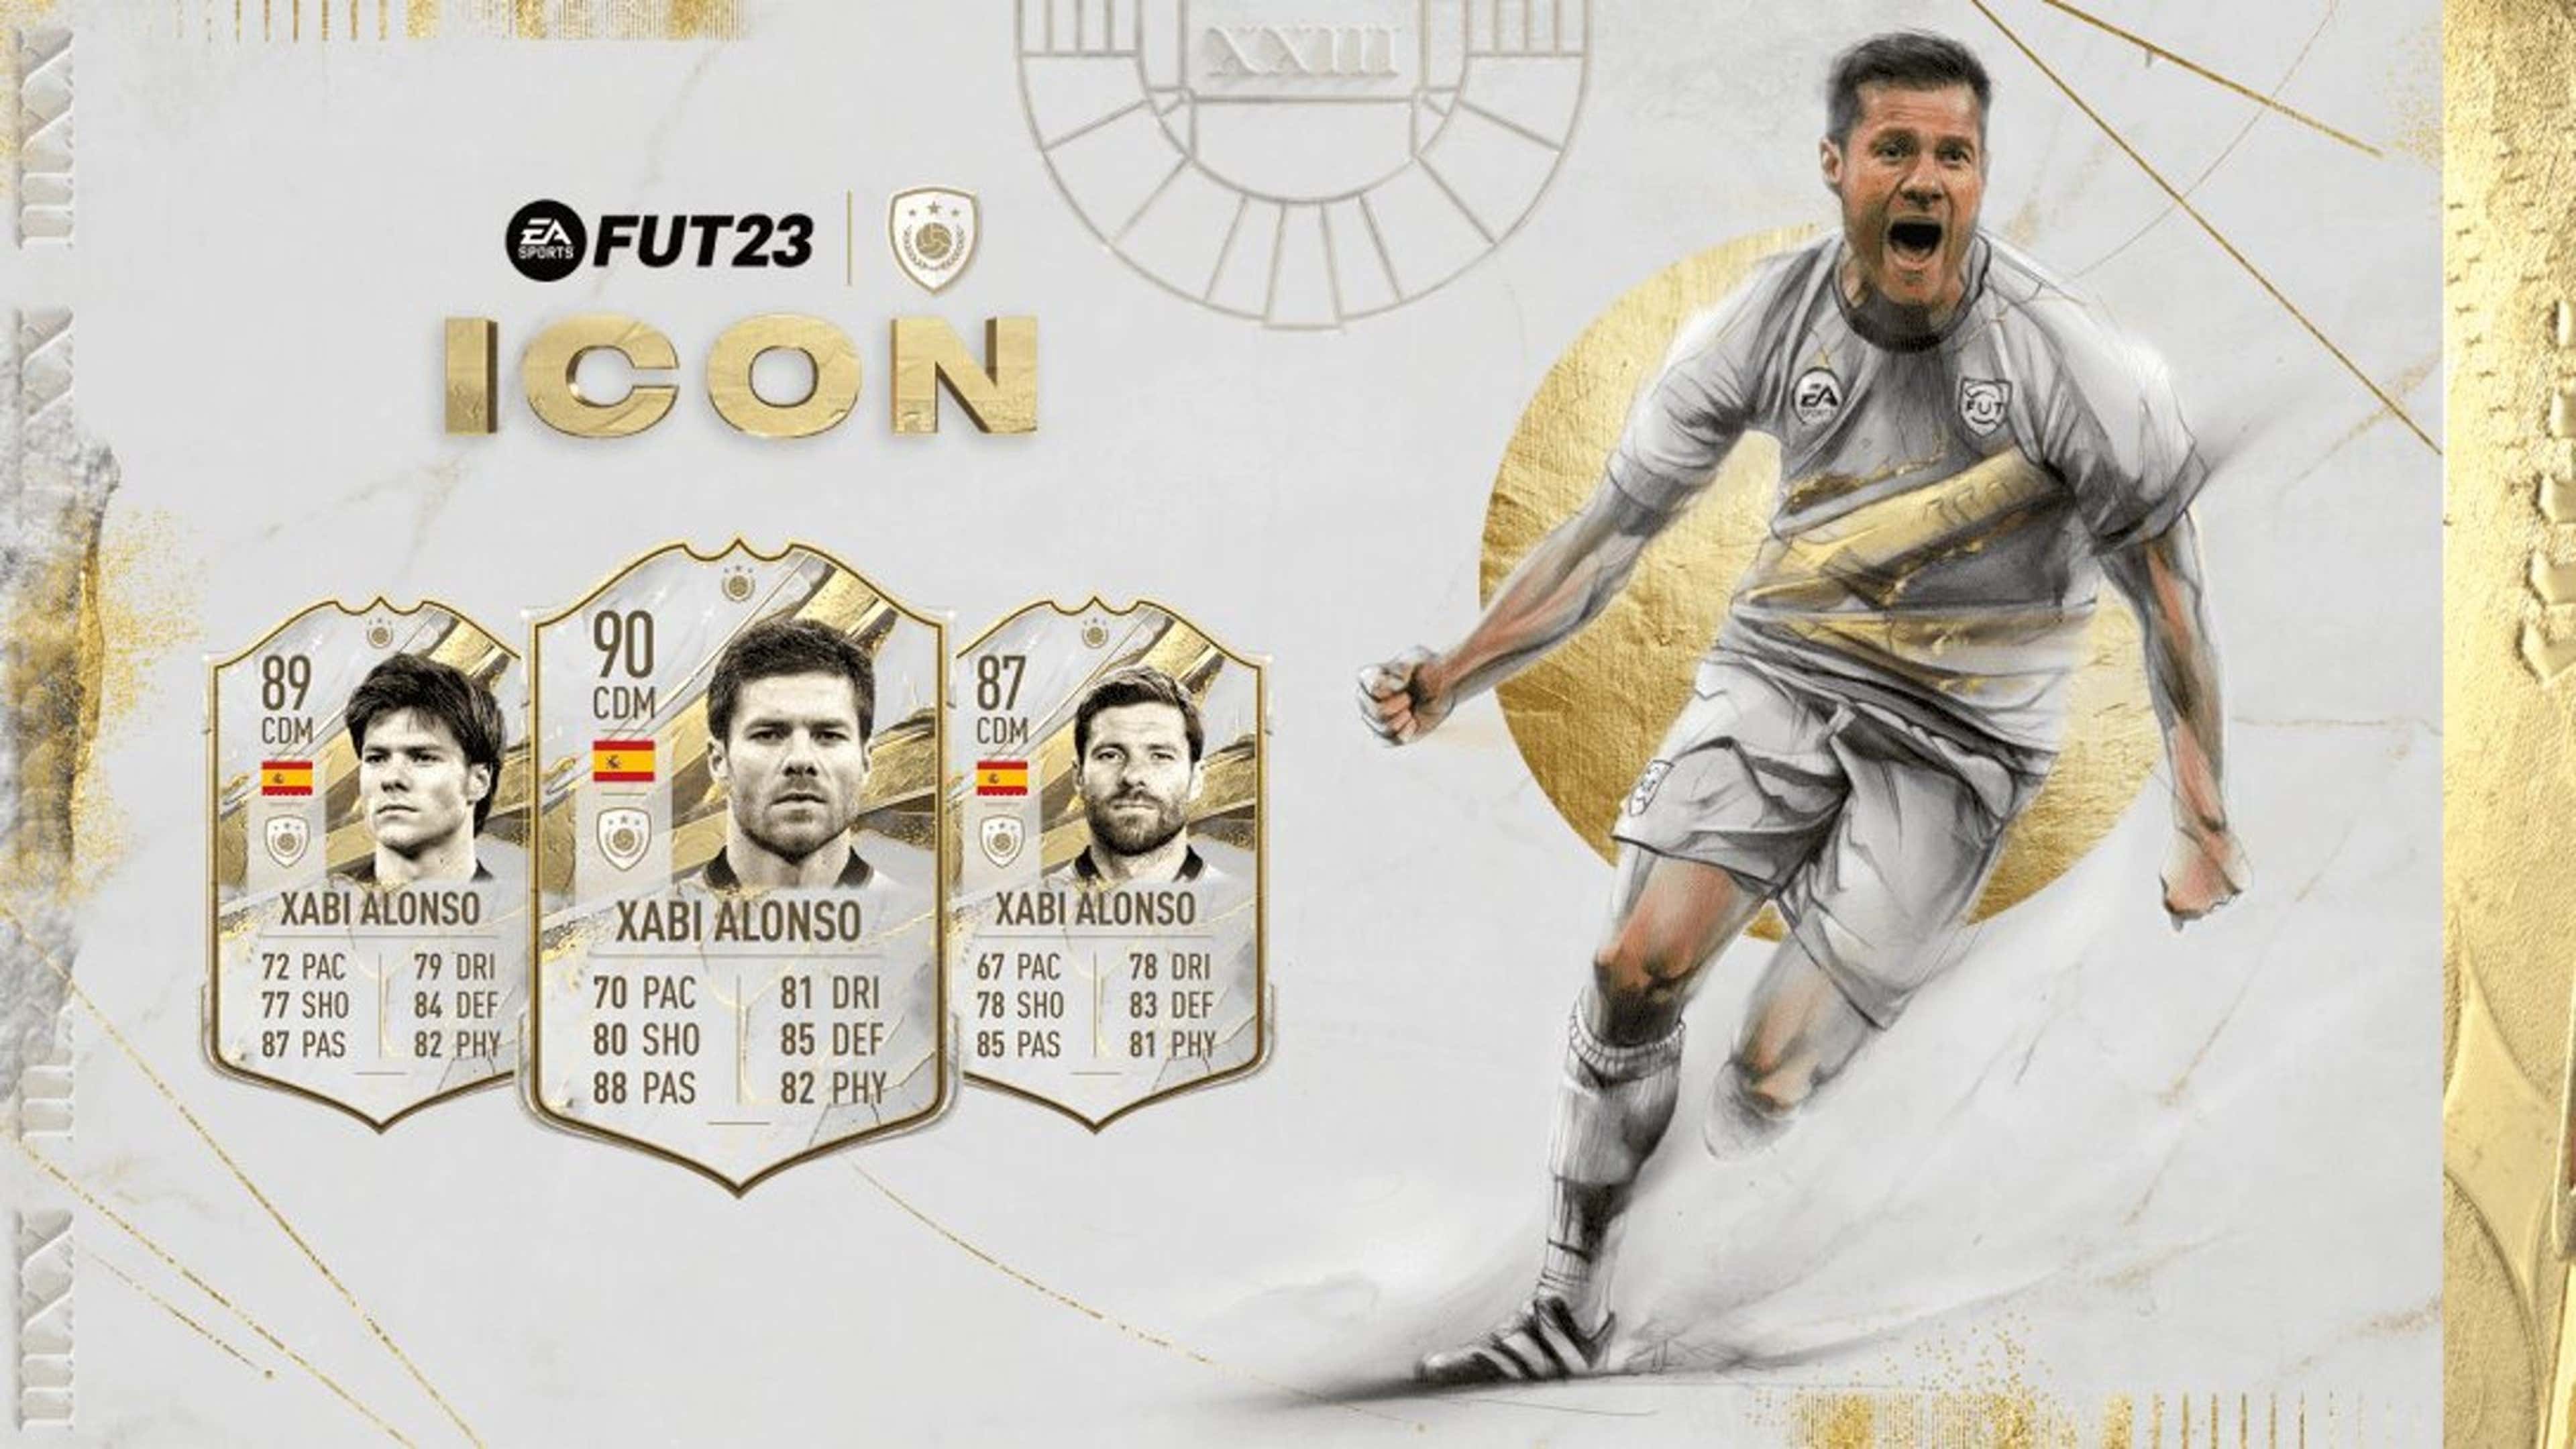 Os novos Icons do Ultimate Team no FIFA 23: quem são e seus